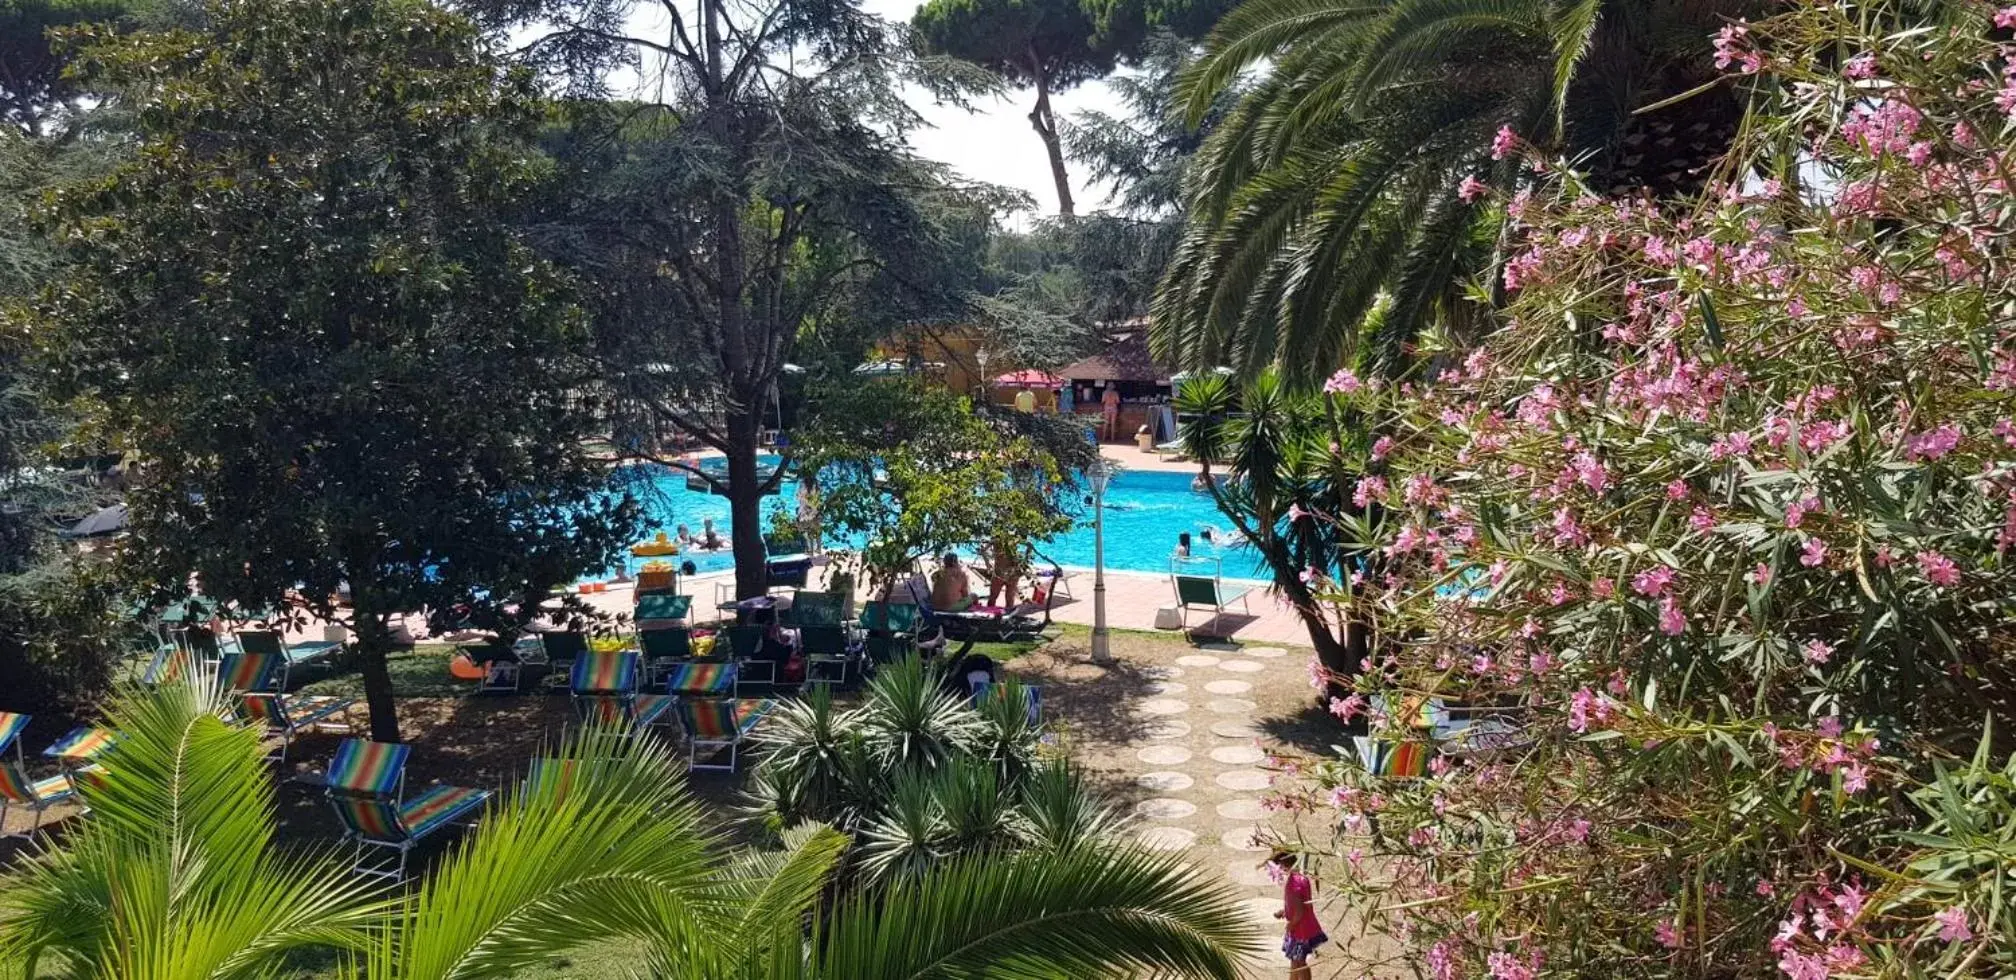 Swimming Pool in Hotel Parco Dei Principi